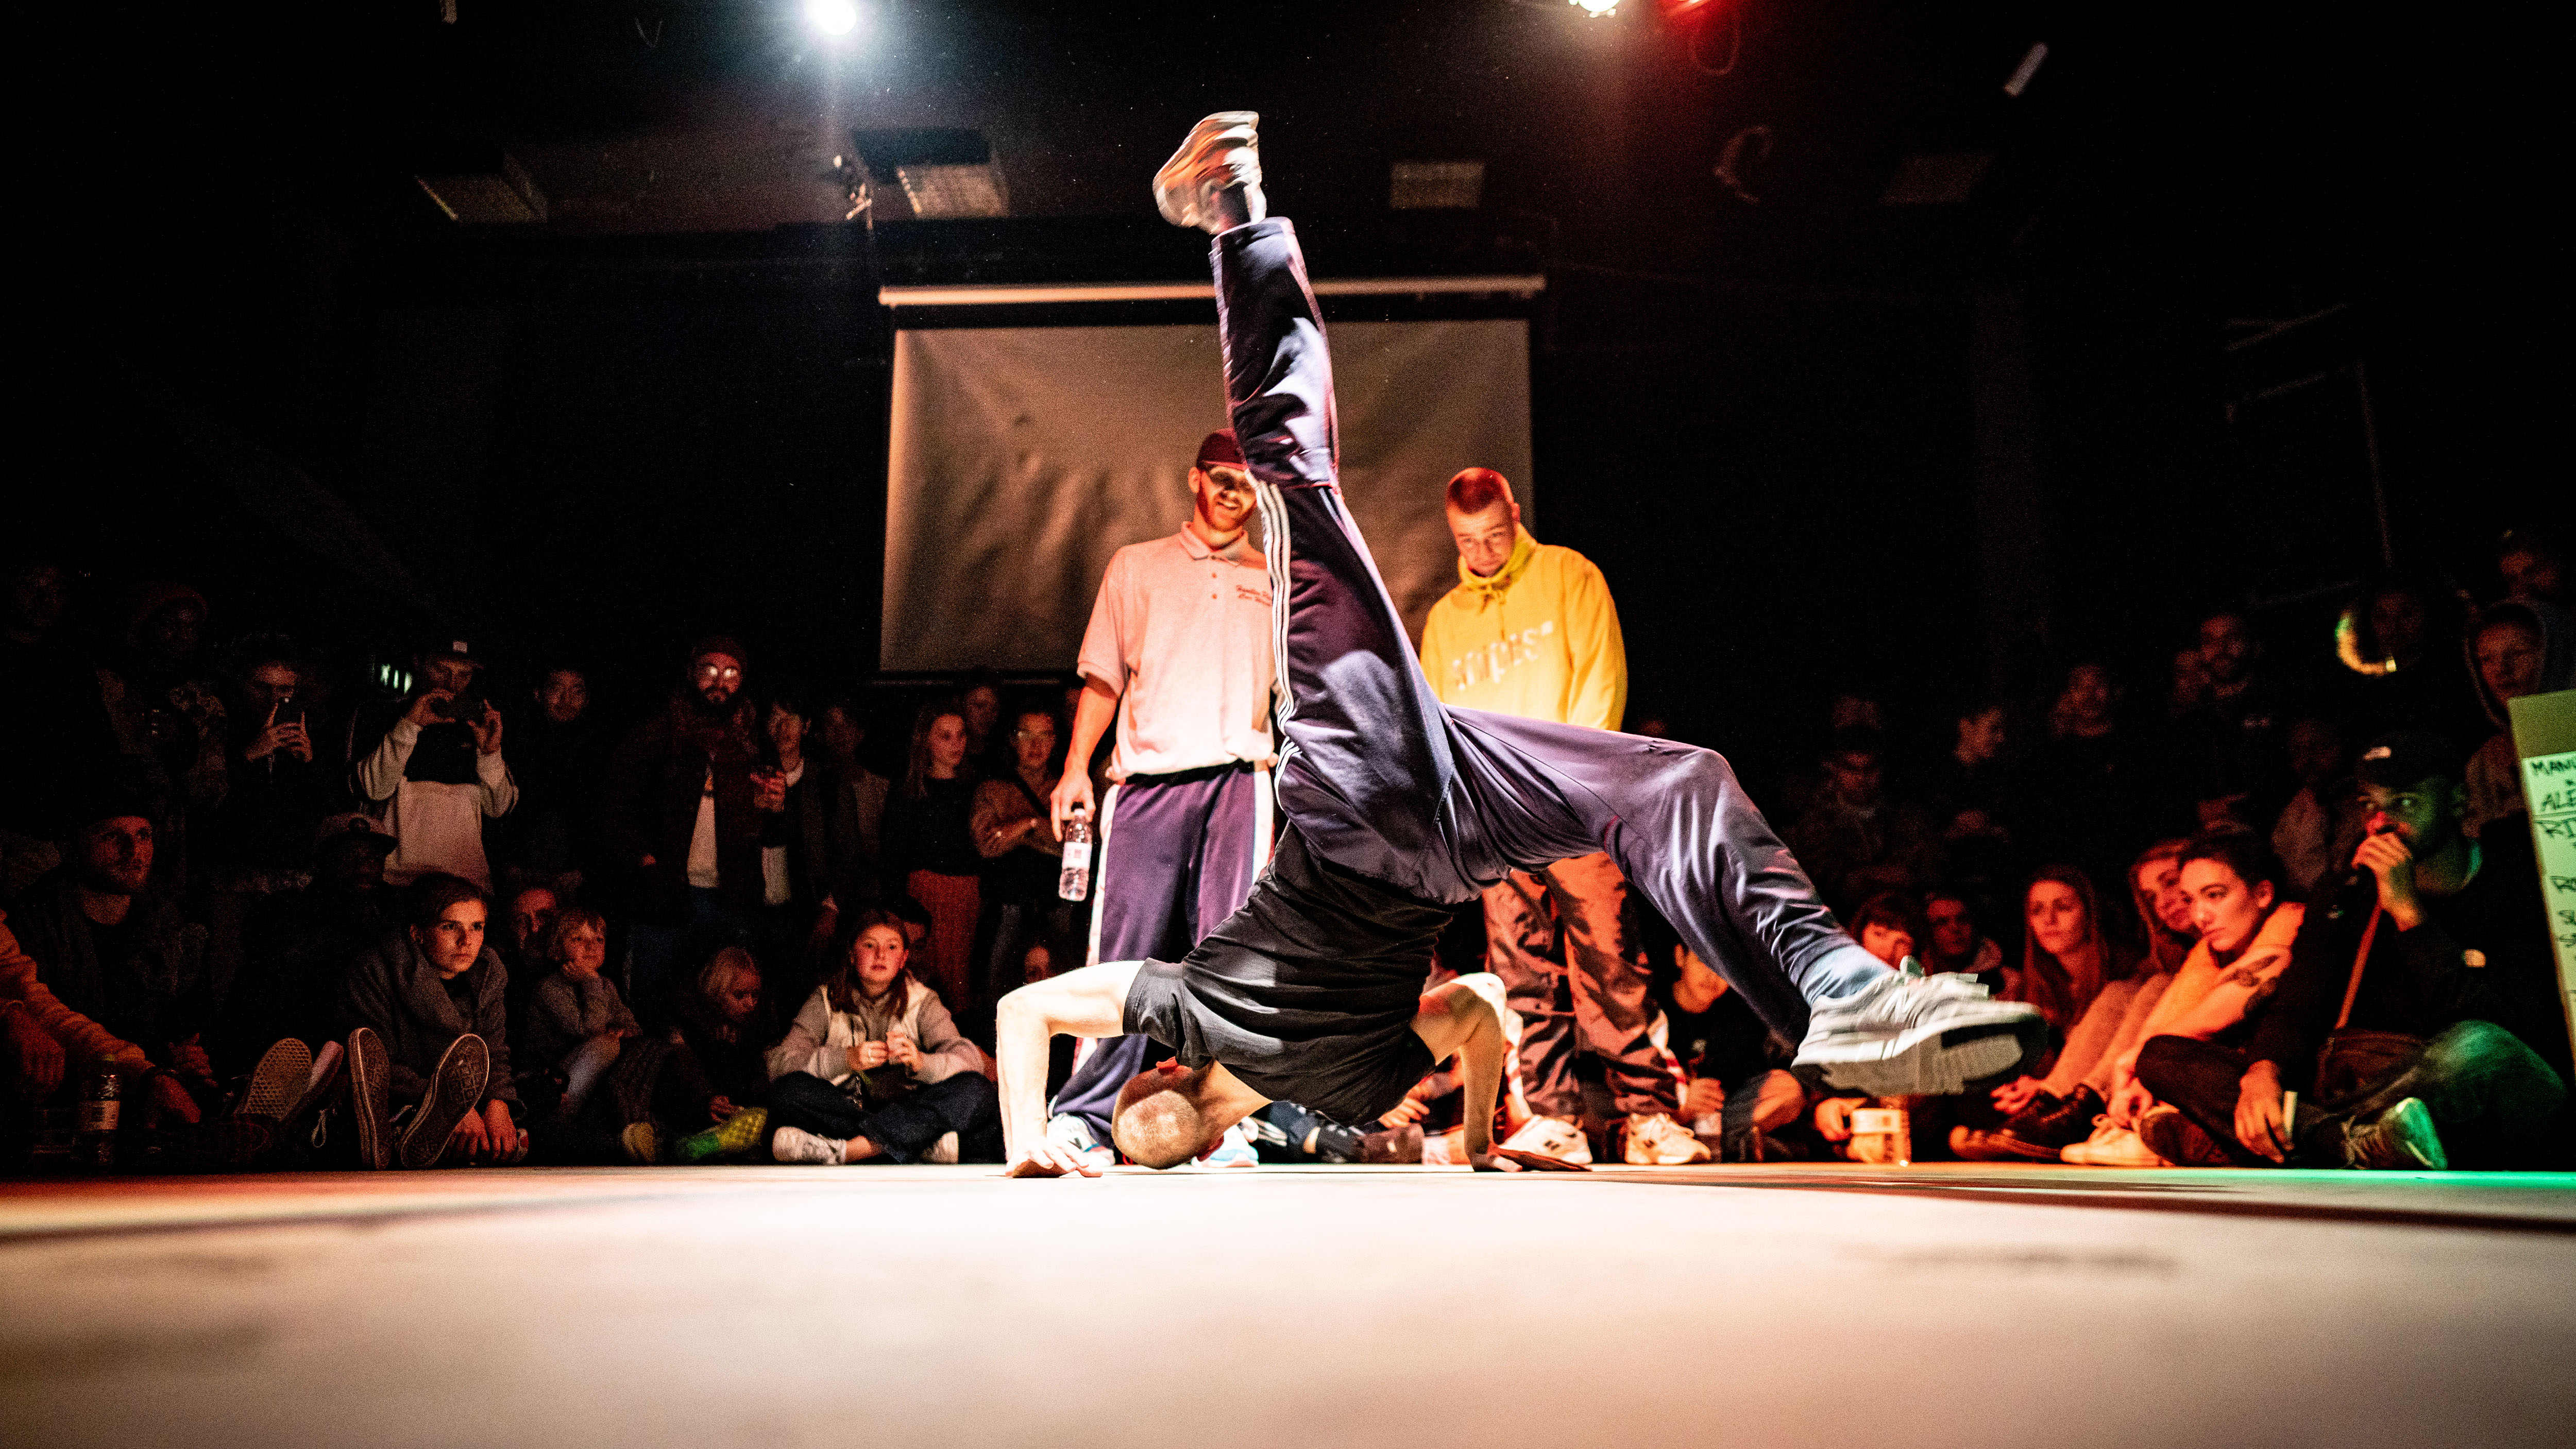 Breakdance festival "Floor Wars", Roadtrip Back2Tape, Copenhagen, 2020, Porsche AG